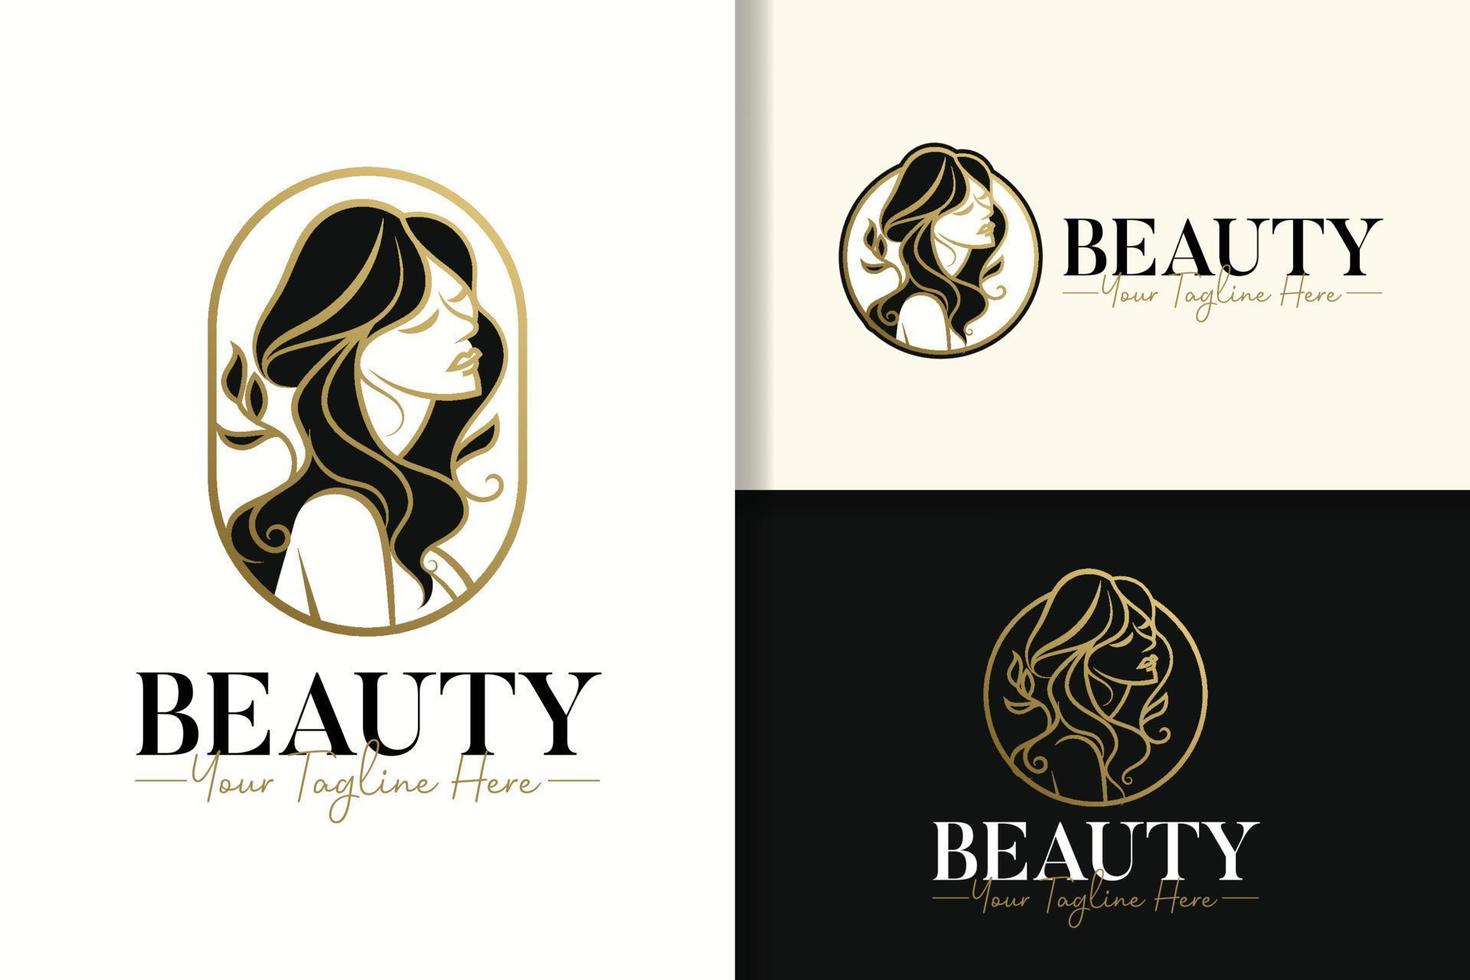 Beauty women elegant feminine gold logo design template vector